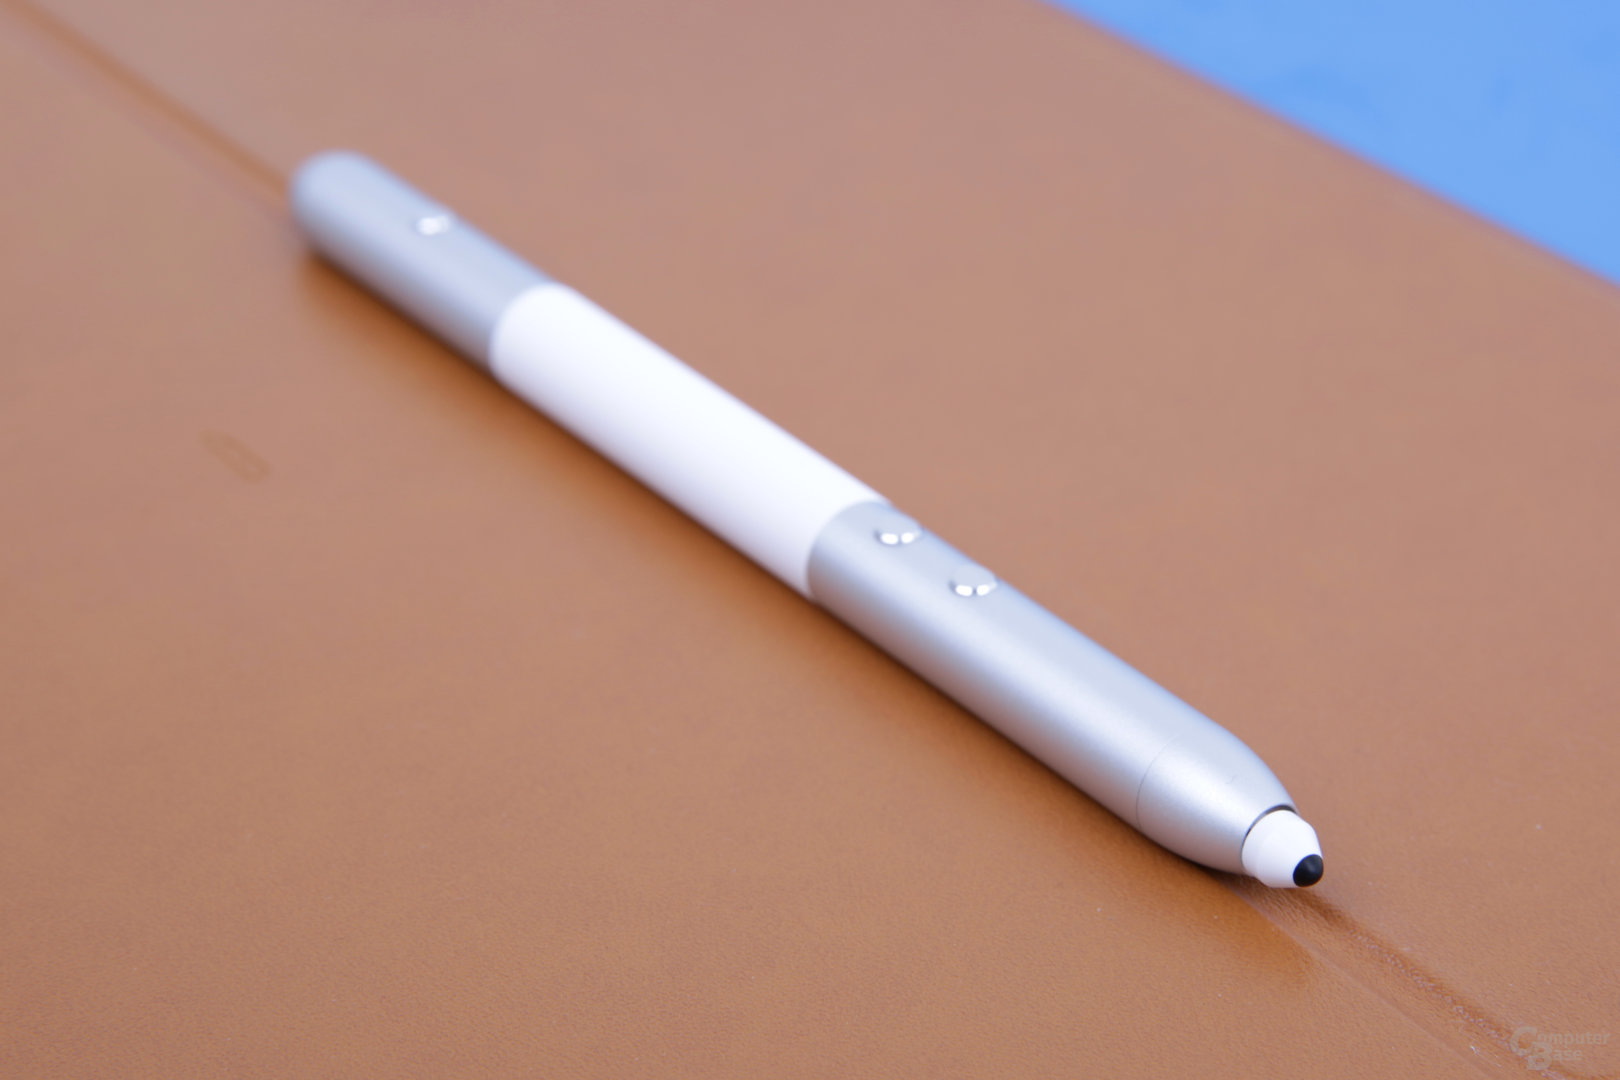 Stift aufgeteilt in drei Segmente mit drei Tasten